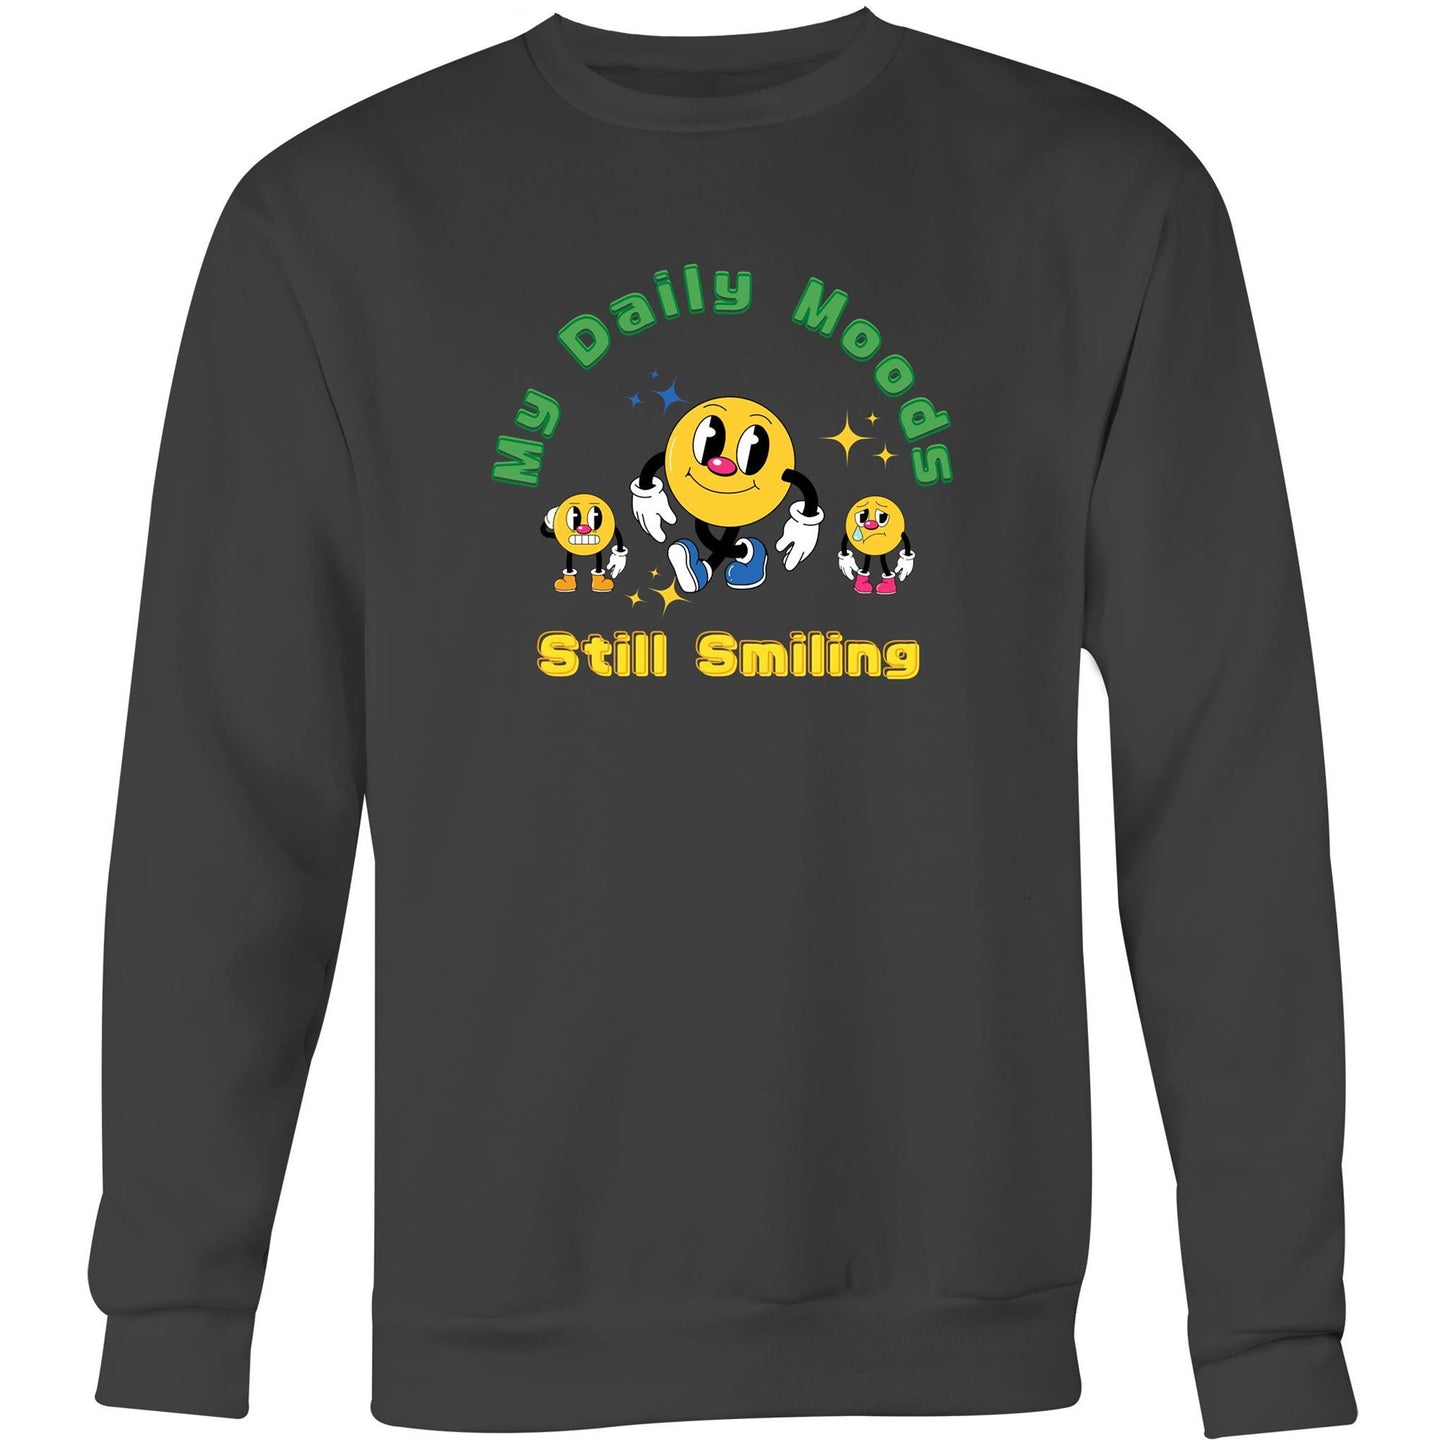 My Daily Moods - Crew Sweatshirt Coal Sweatshirt